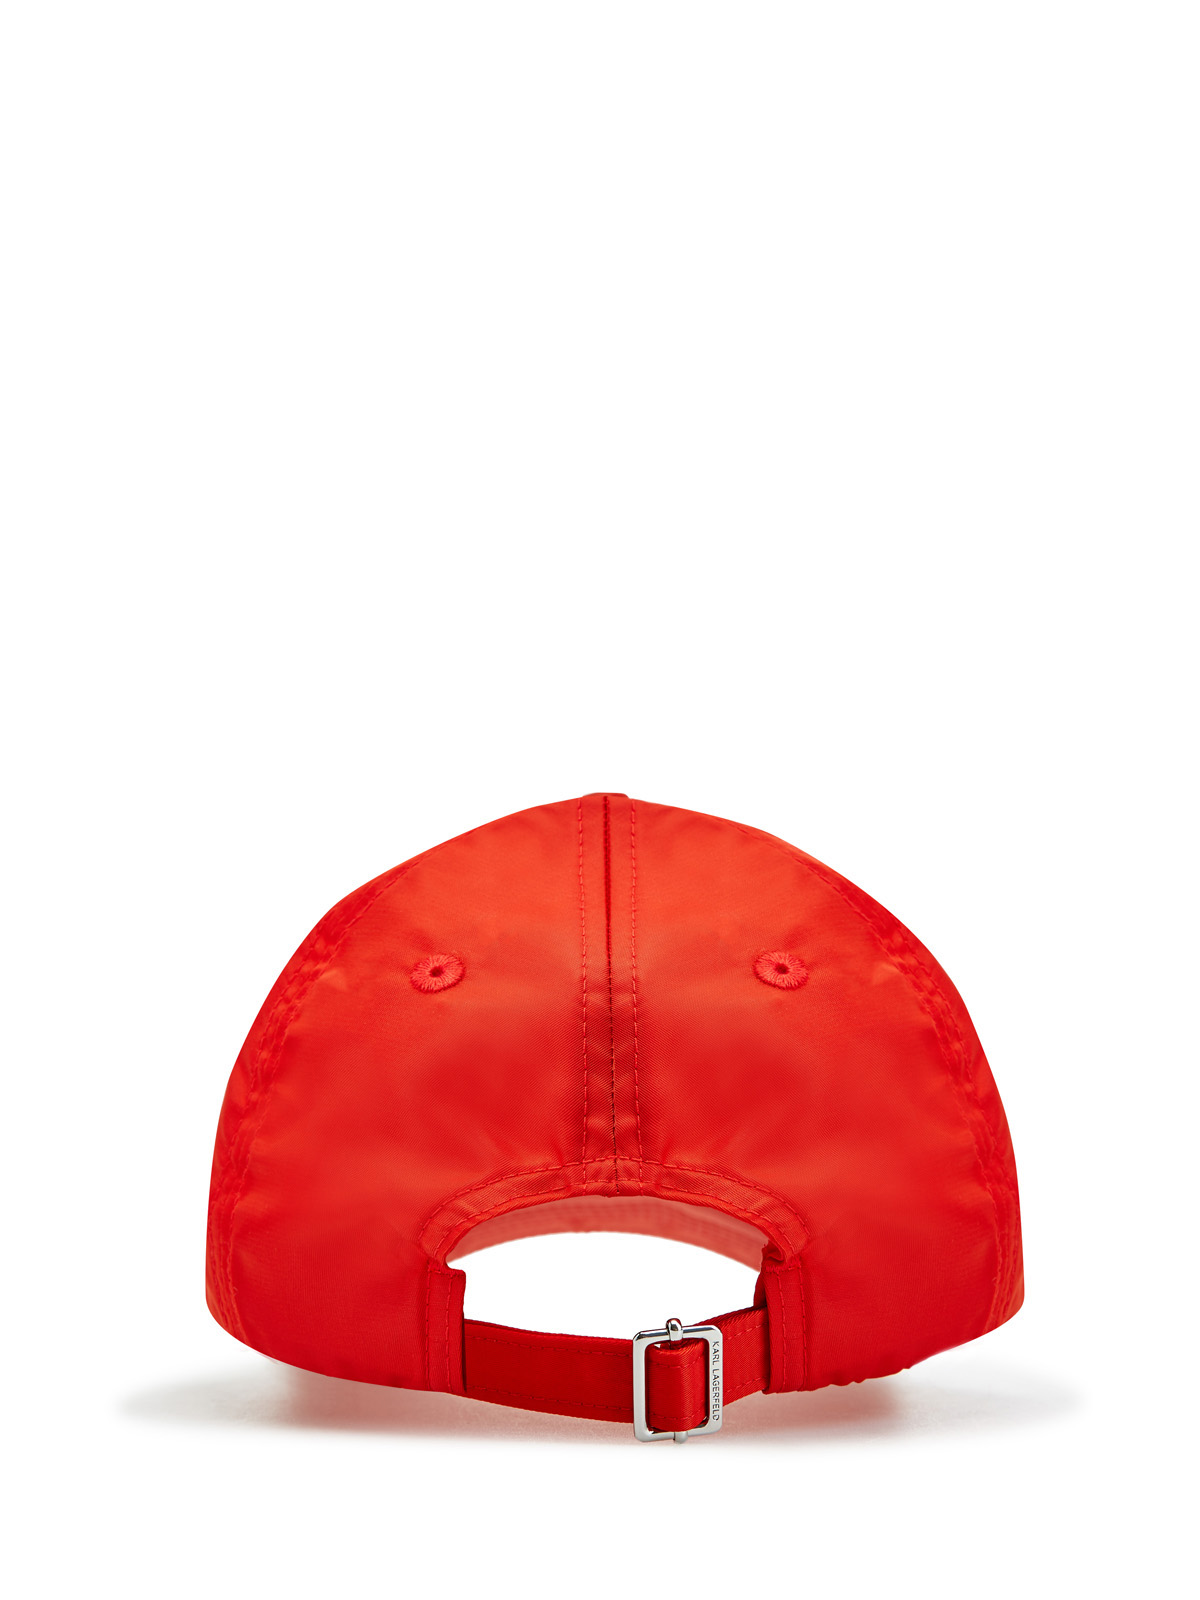 Бейсболка из нейлона с металлизированным декором Rue St-Guillaume KARL LAGERFELD, цвет красный, размер 38;40 - фото 3